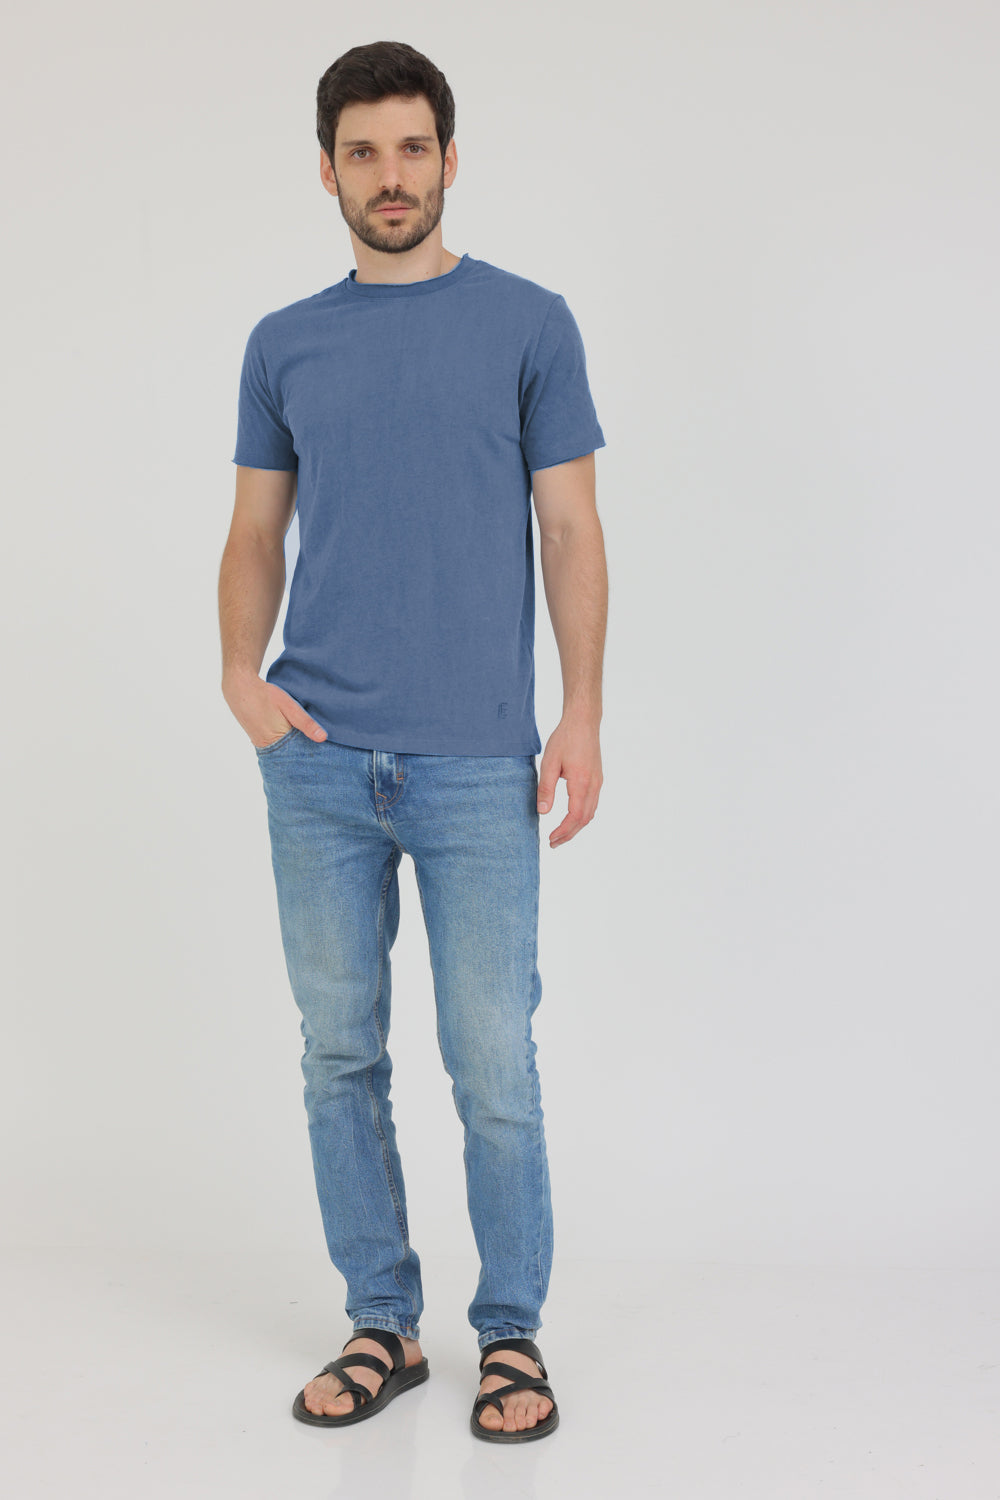 חולצת טי שירט קצרה לגברים צבע כחול ג'ינס